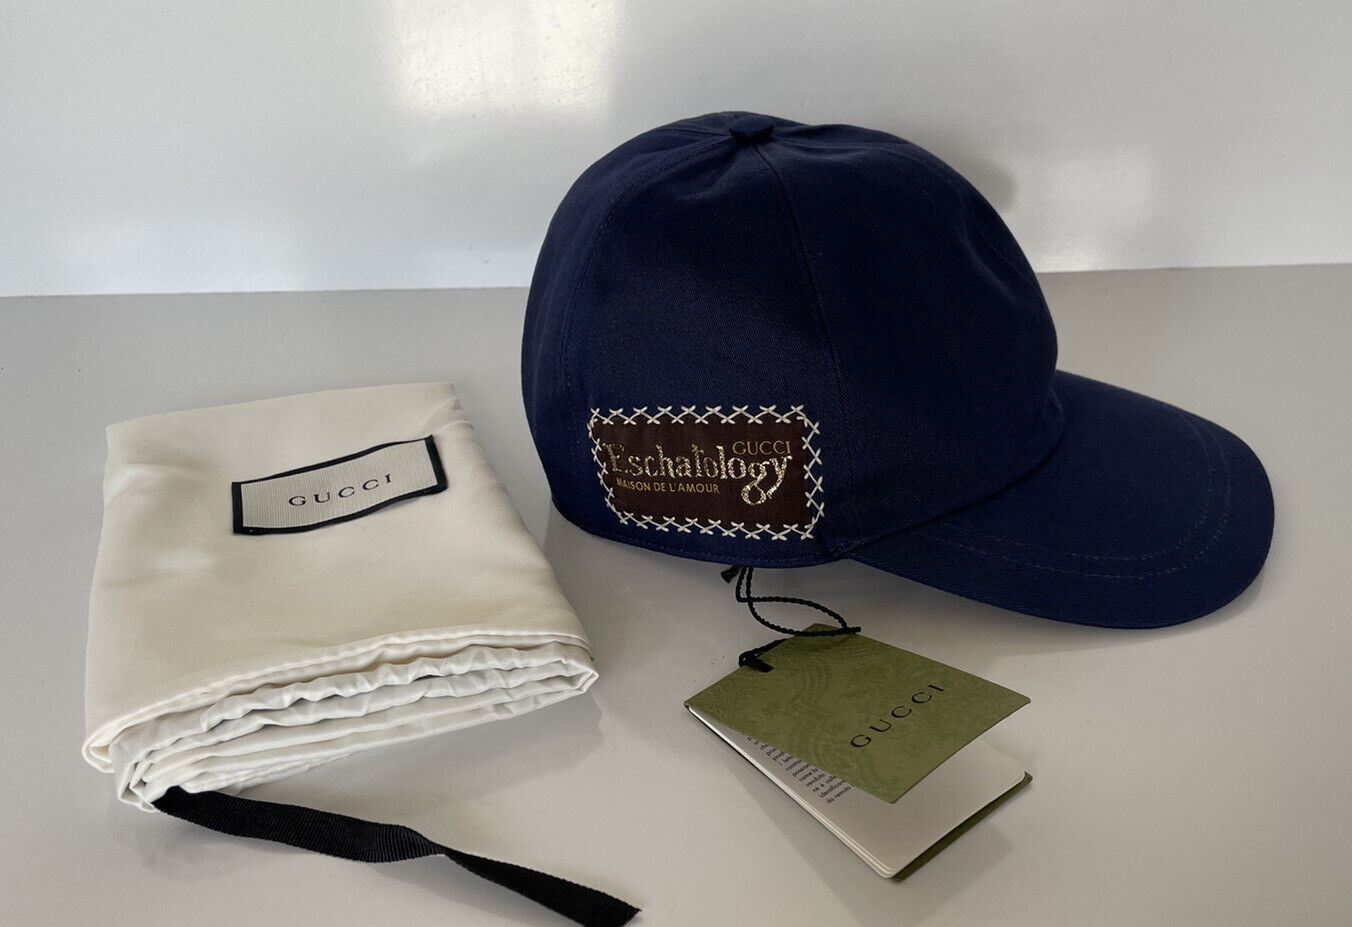 Neu mit Etikett: Gucci Eschatology Baseballkappe, blaue Mütze, mittelgroß, hergestellt in Italien, 656183 